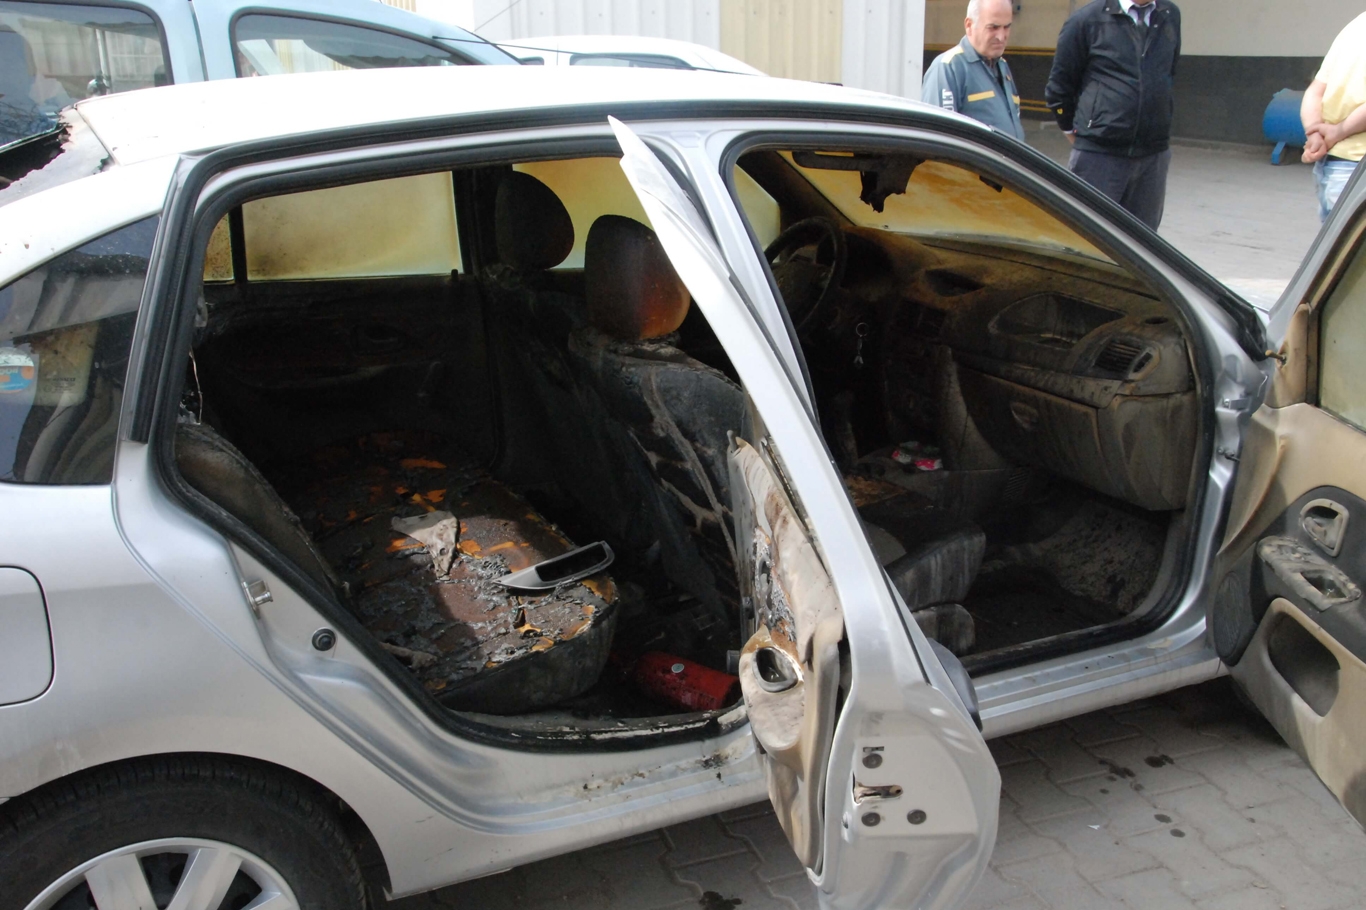 Tarsus İlçe Tarım Müdürlüğünün aracı kundaklandı